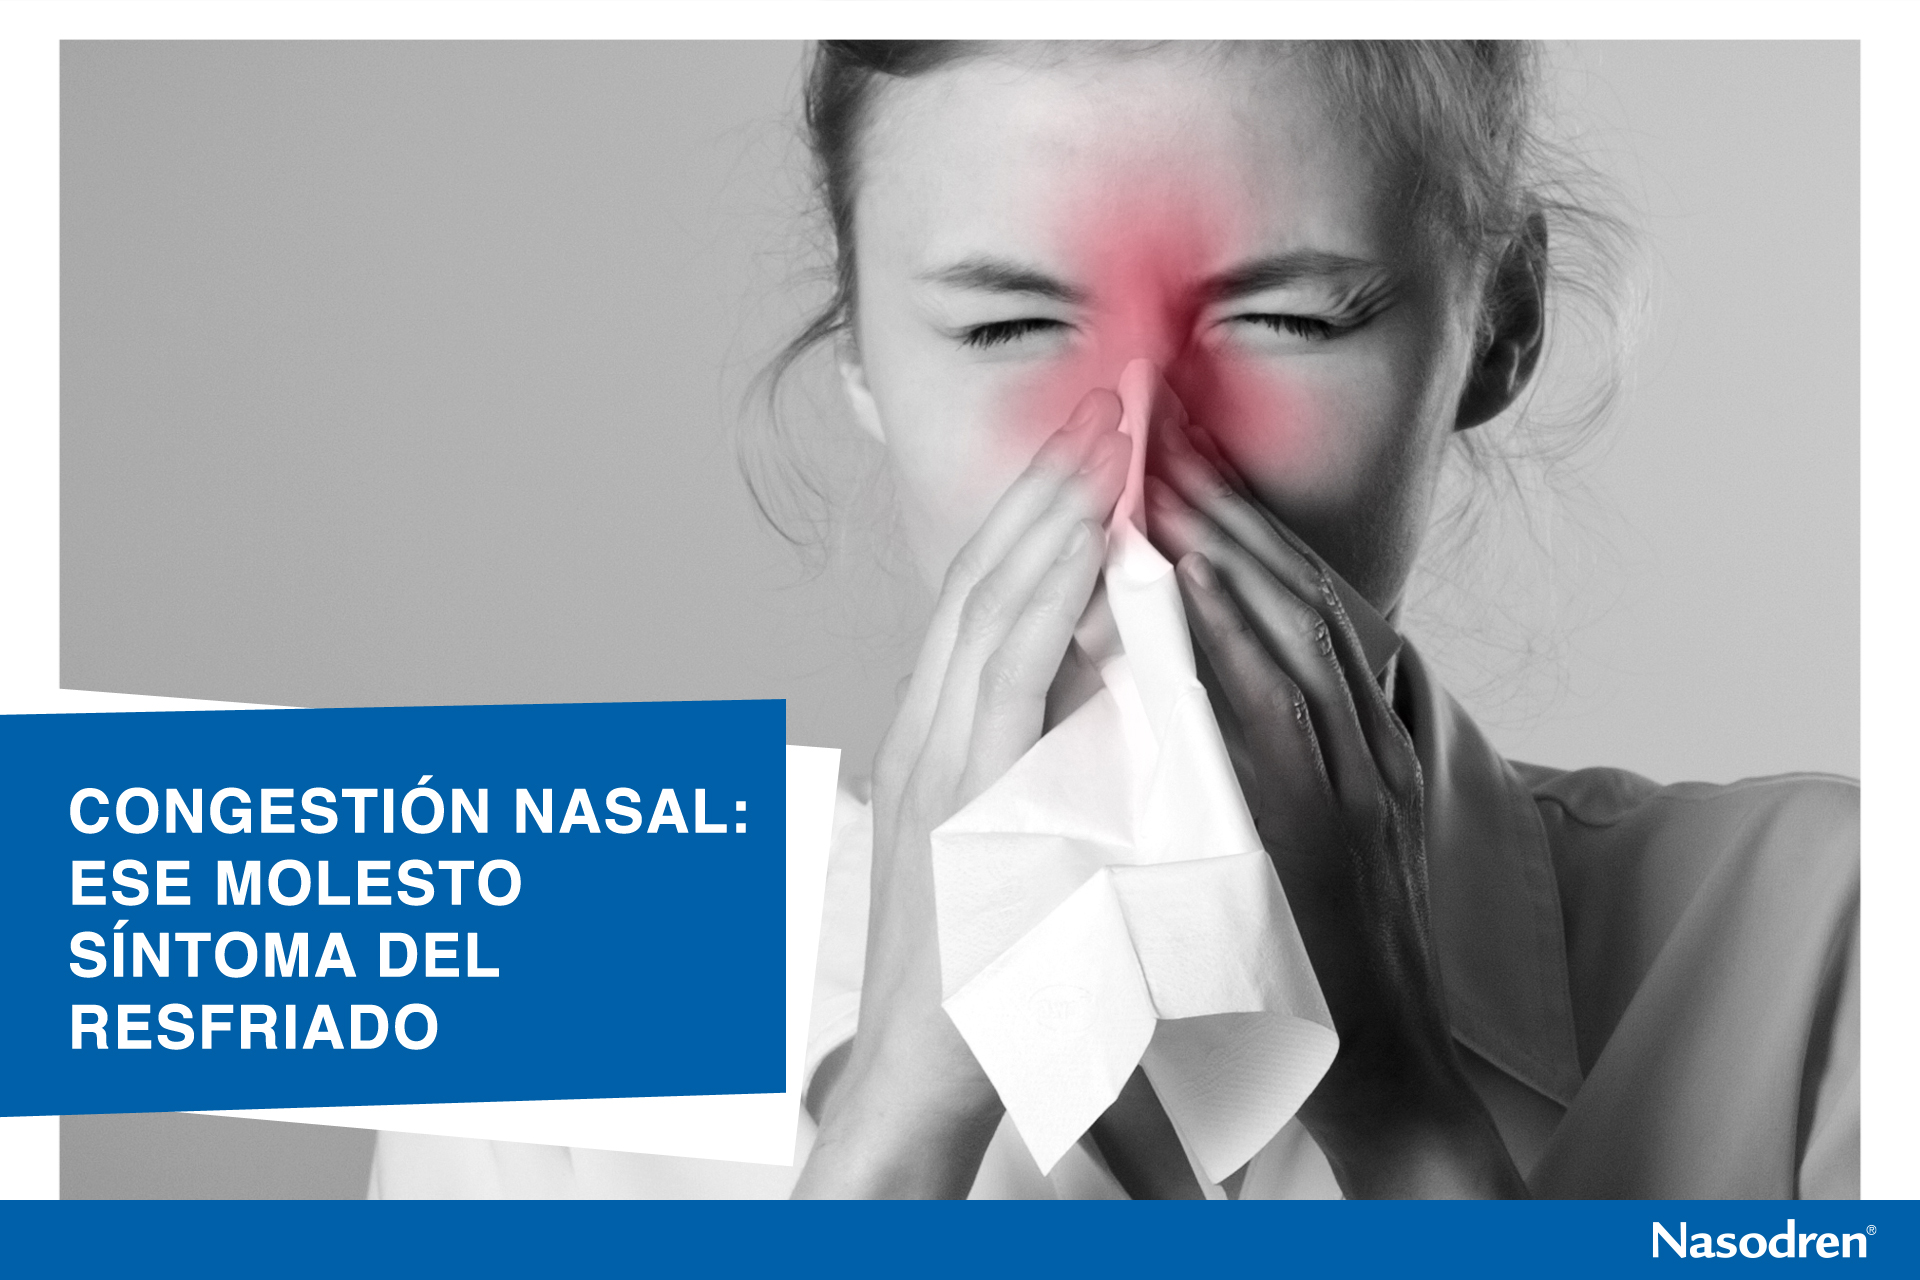 Congestión Nasal: Ese molesto síntoma del resfriado